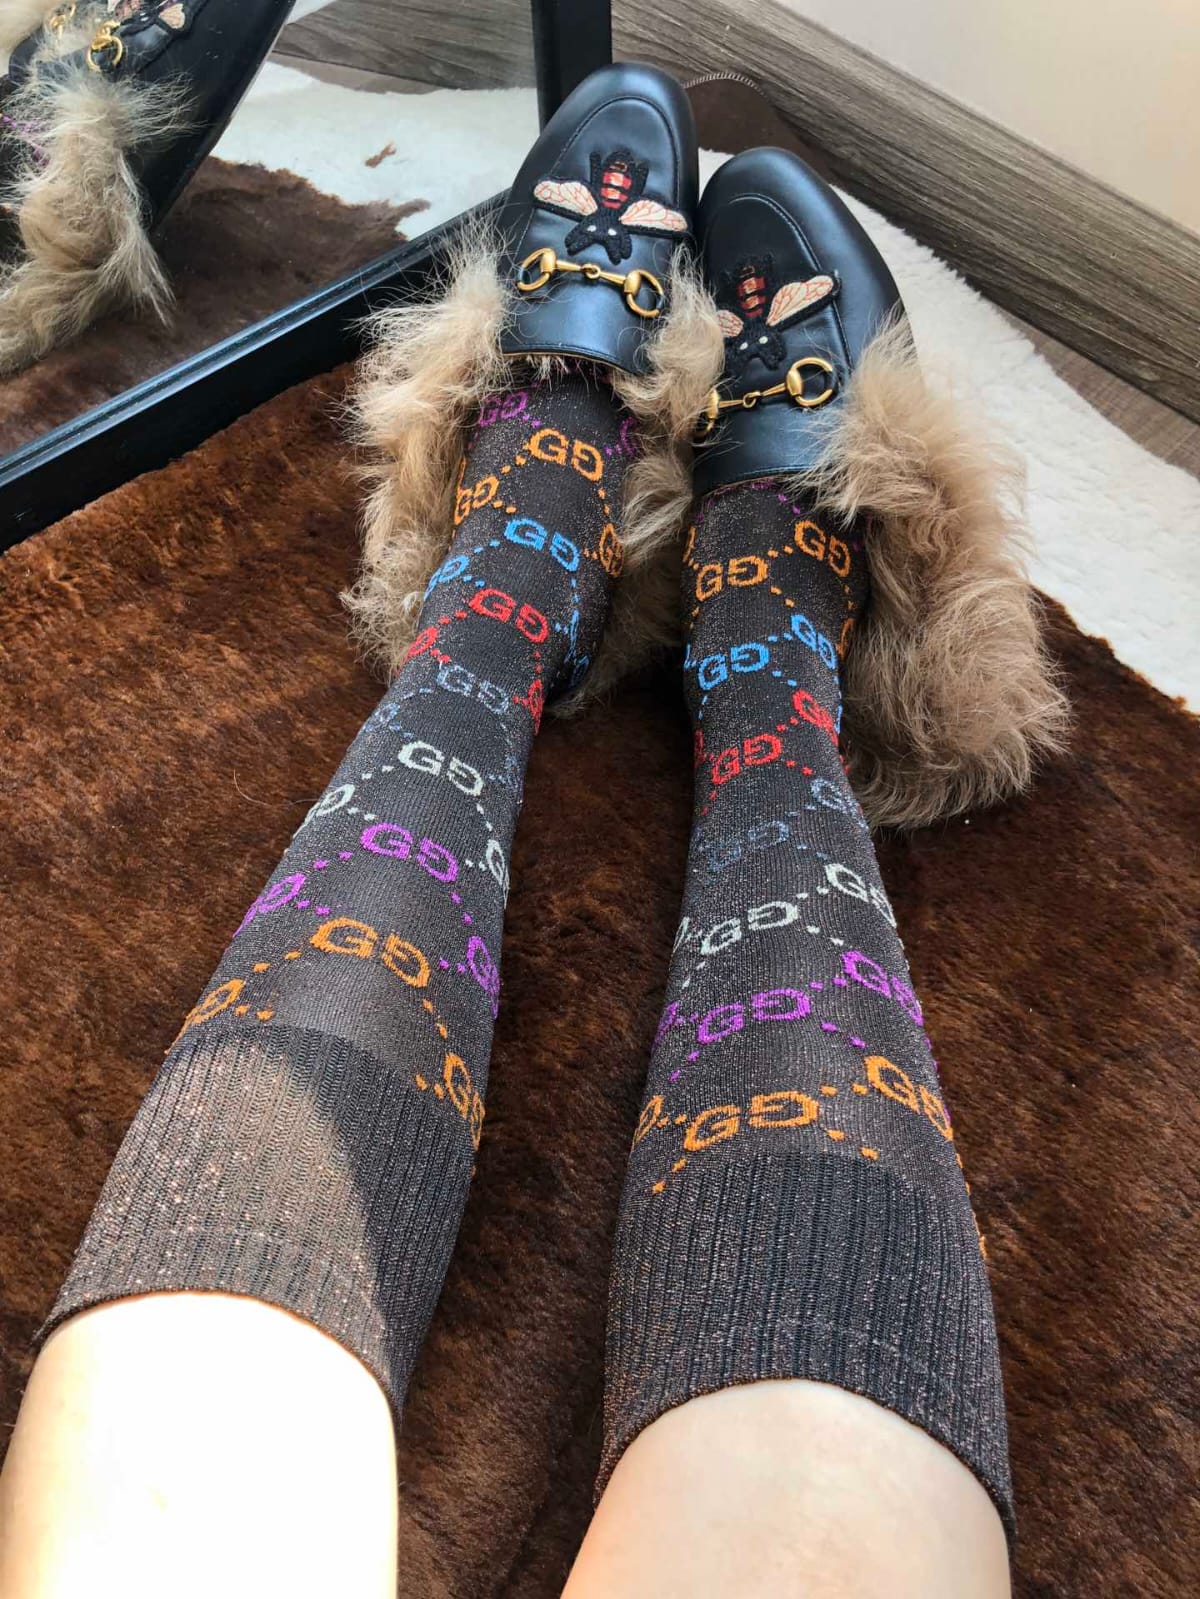 Gucci  Socks